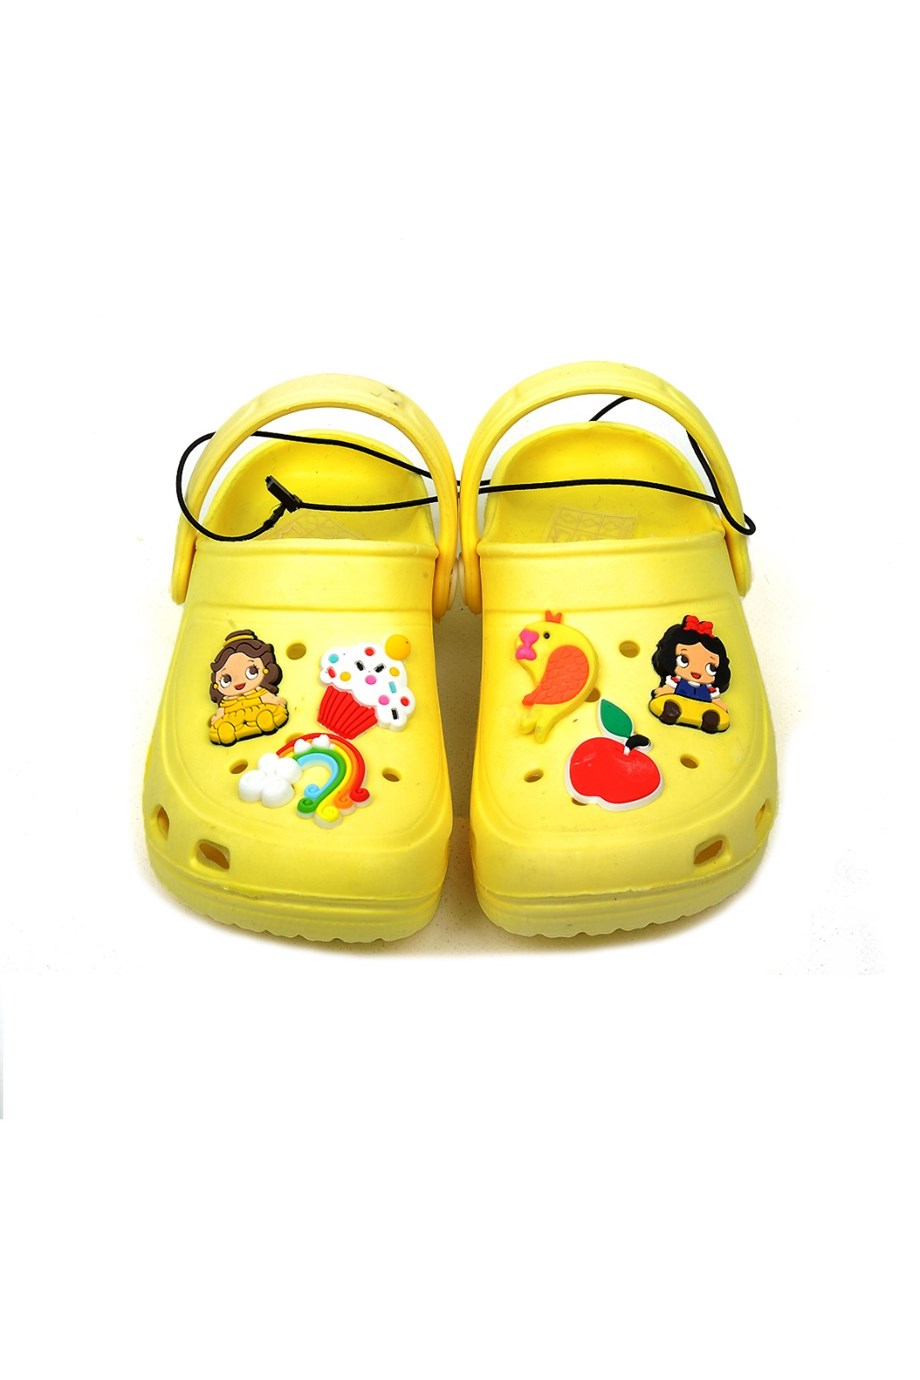 Crocs Tarz Model Sandalet Terlik Prenses Gökkuşağı Süslü Sarı